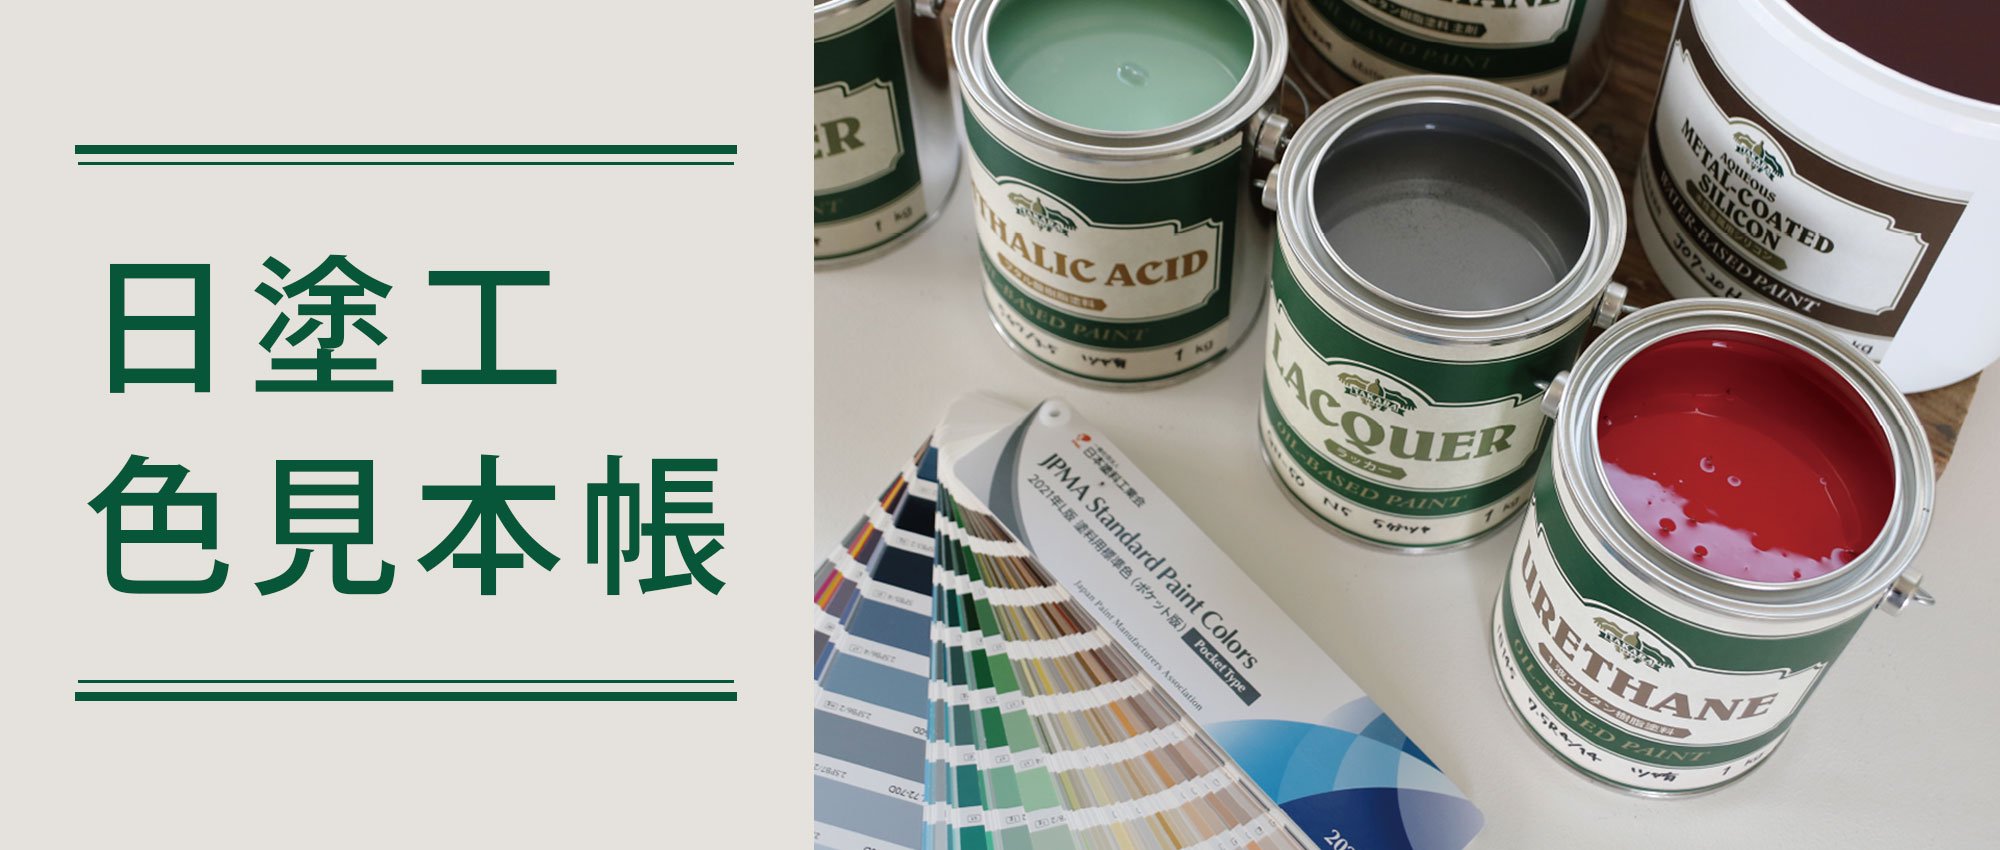 日塗工色見本帳 - 塗料の日塗工・マンセル値の色合わせの調色屋